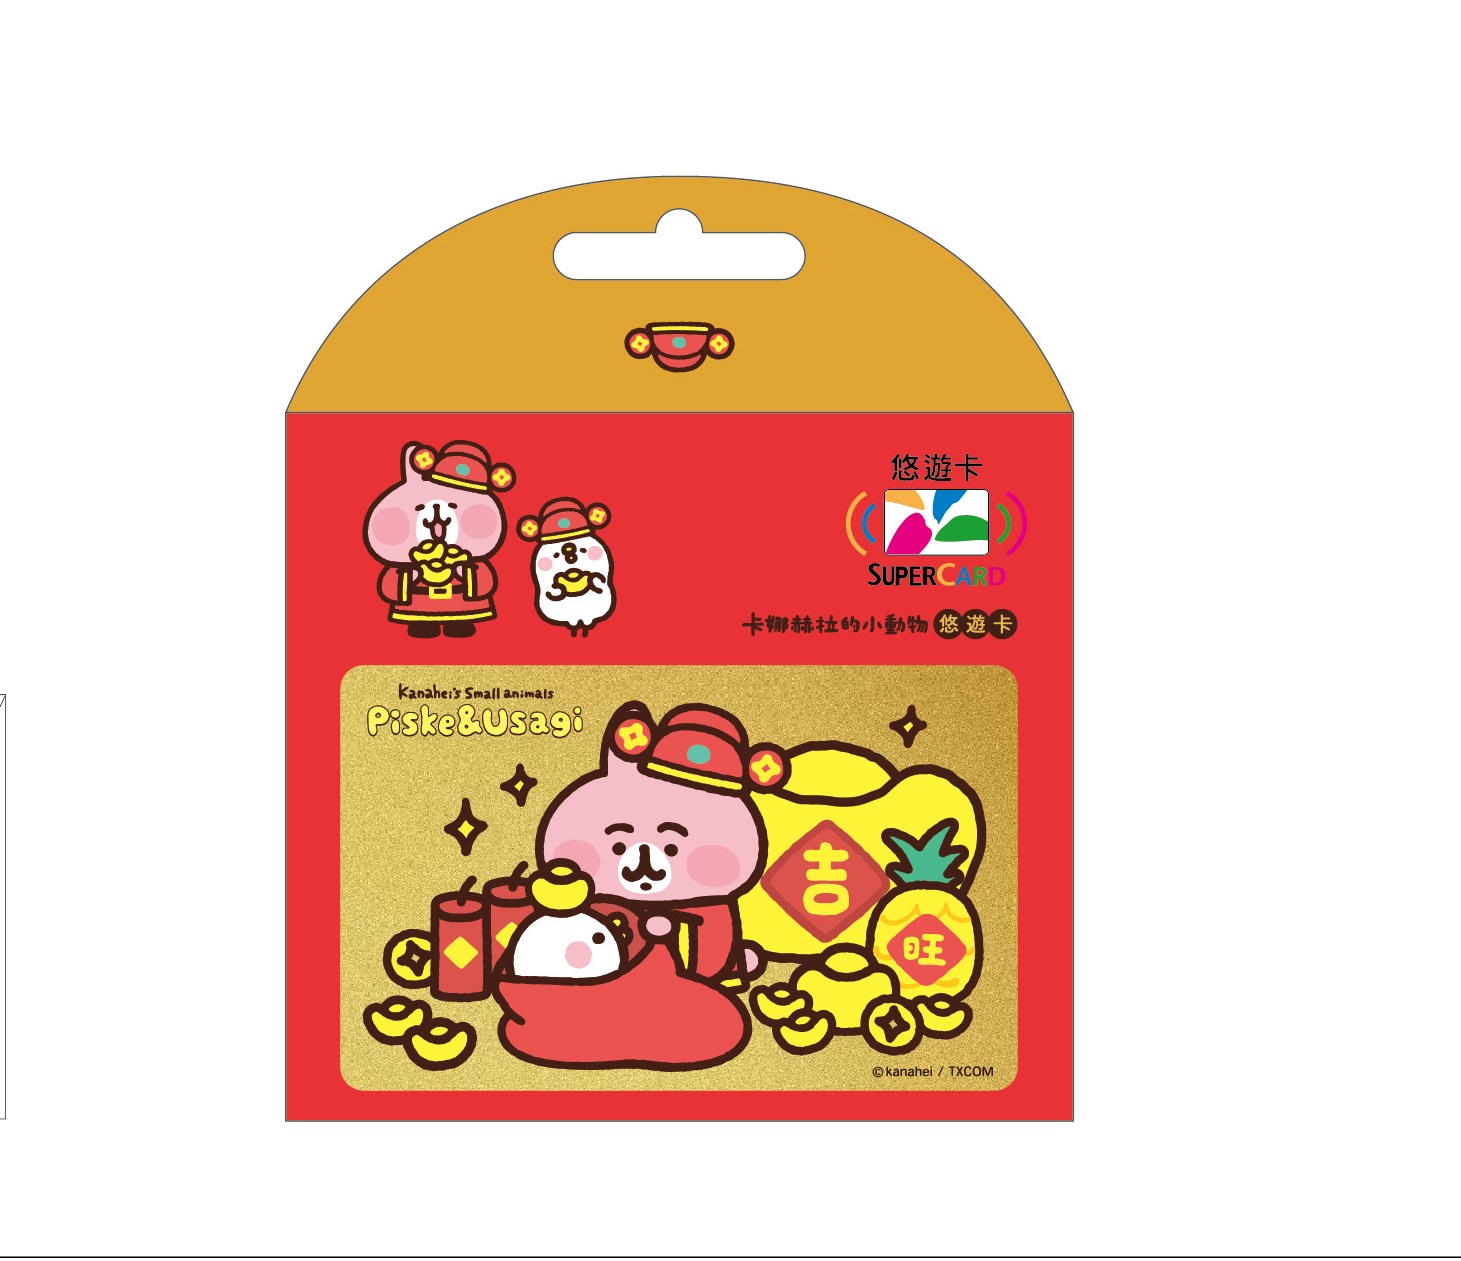 卡娜赫拉的小動物悠遊卡-過年紅包SUPERCARD悠遊卡(財神到)